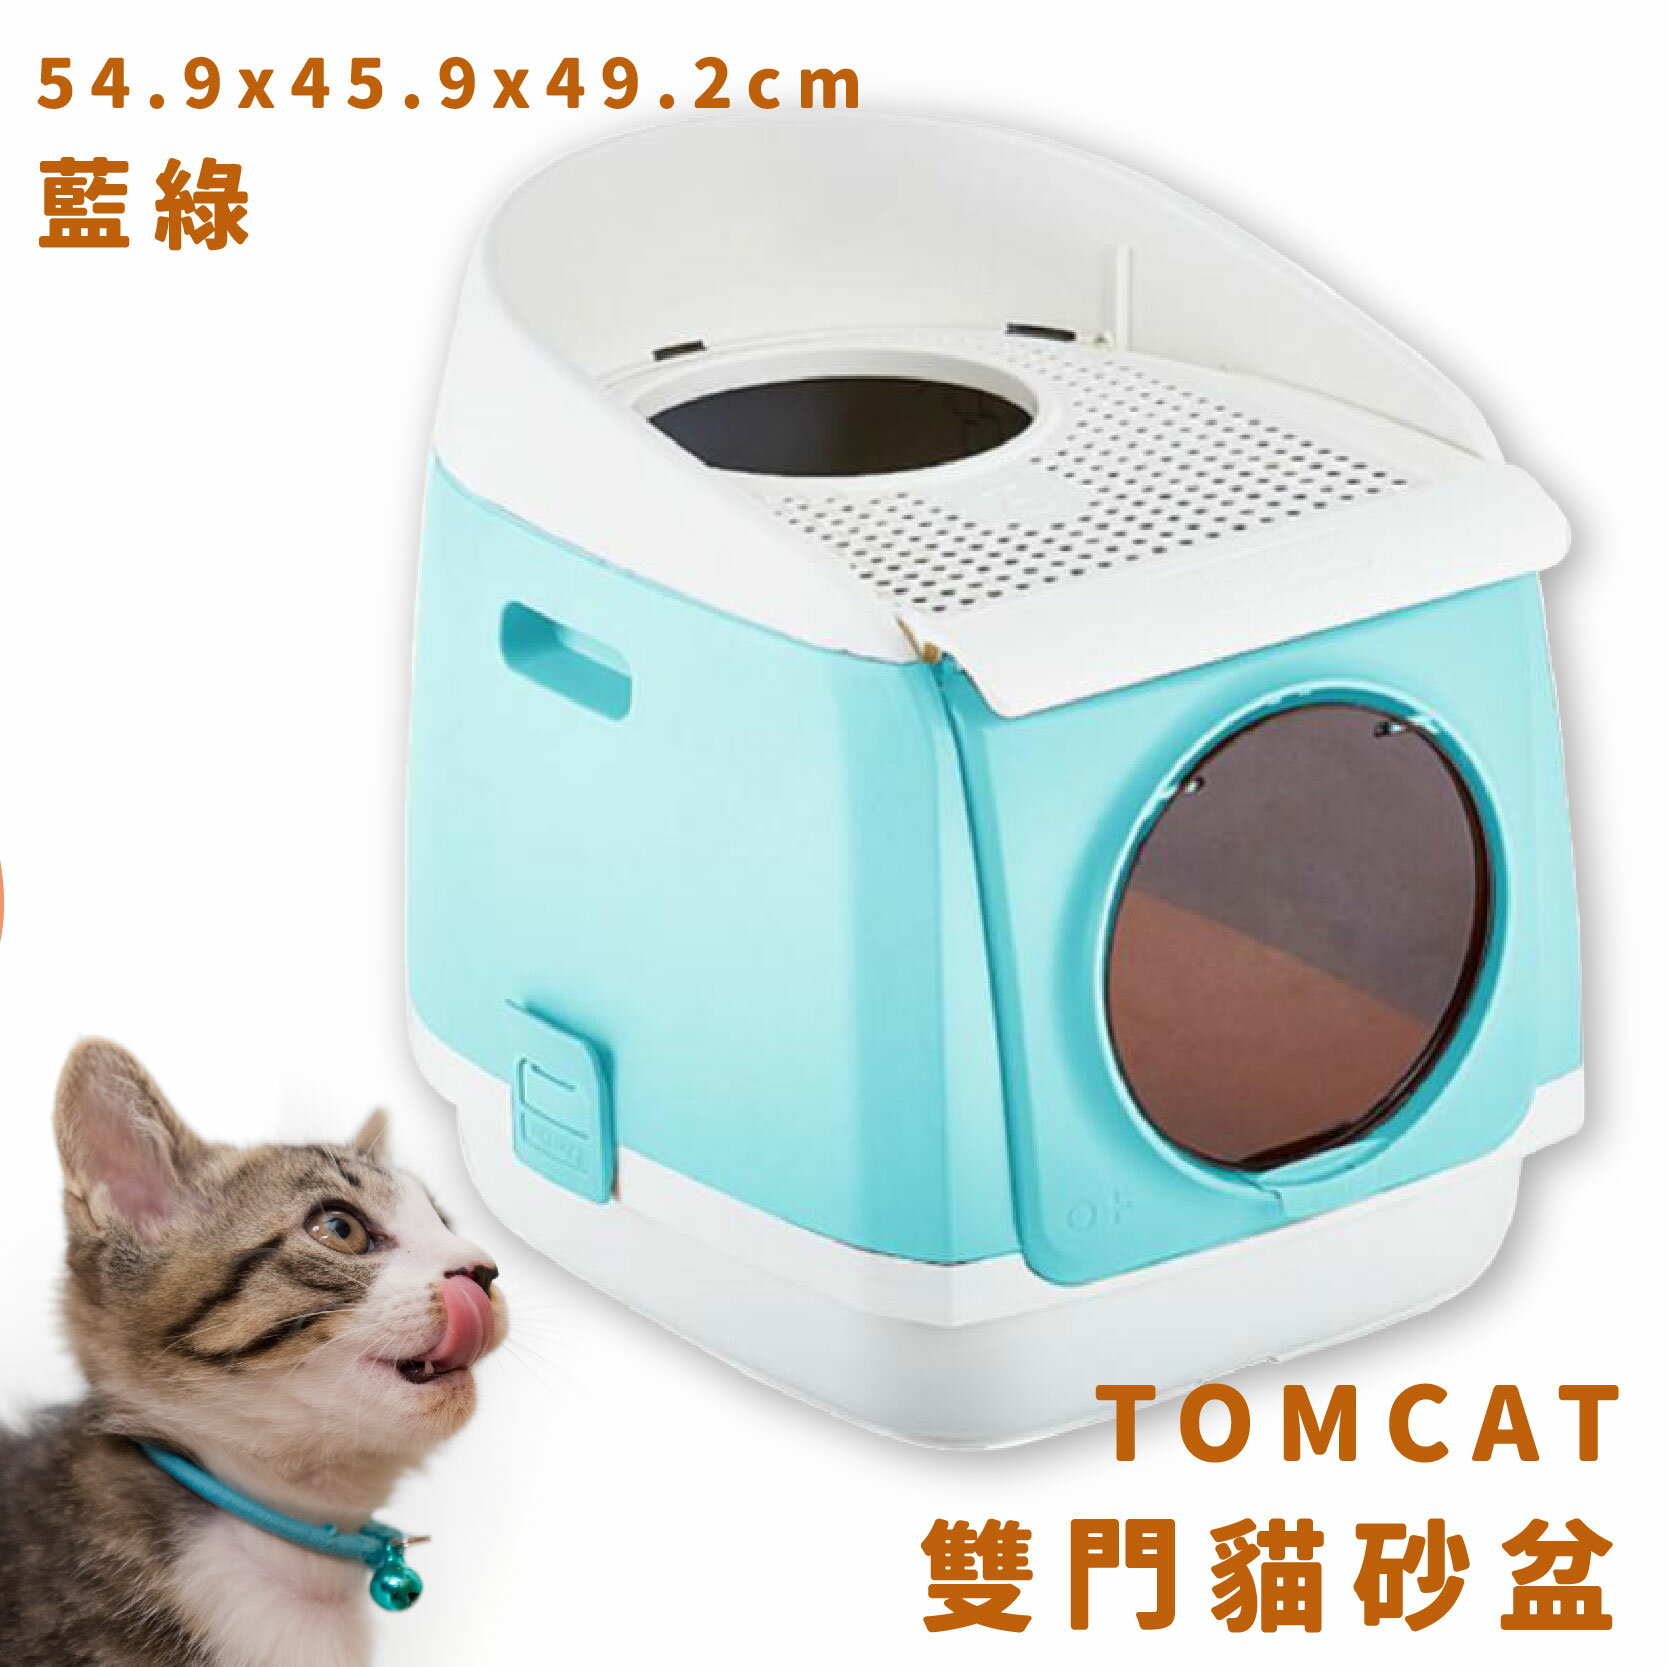 【現貨供應】TOMCAT 雙門貓砂盆 藍綠 雙門設計 落沙踏板 活性碳片 貓廁所 貓用品 寵物用品 寵物精品 限時促銷